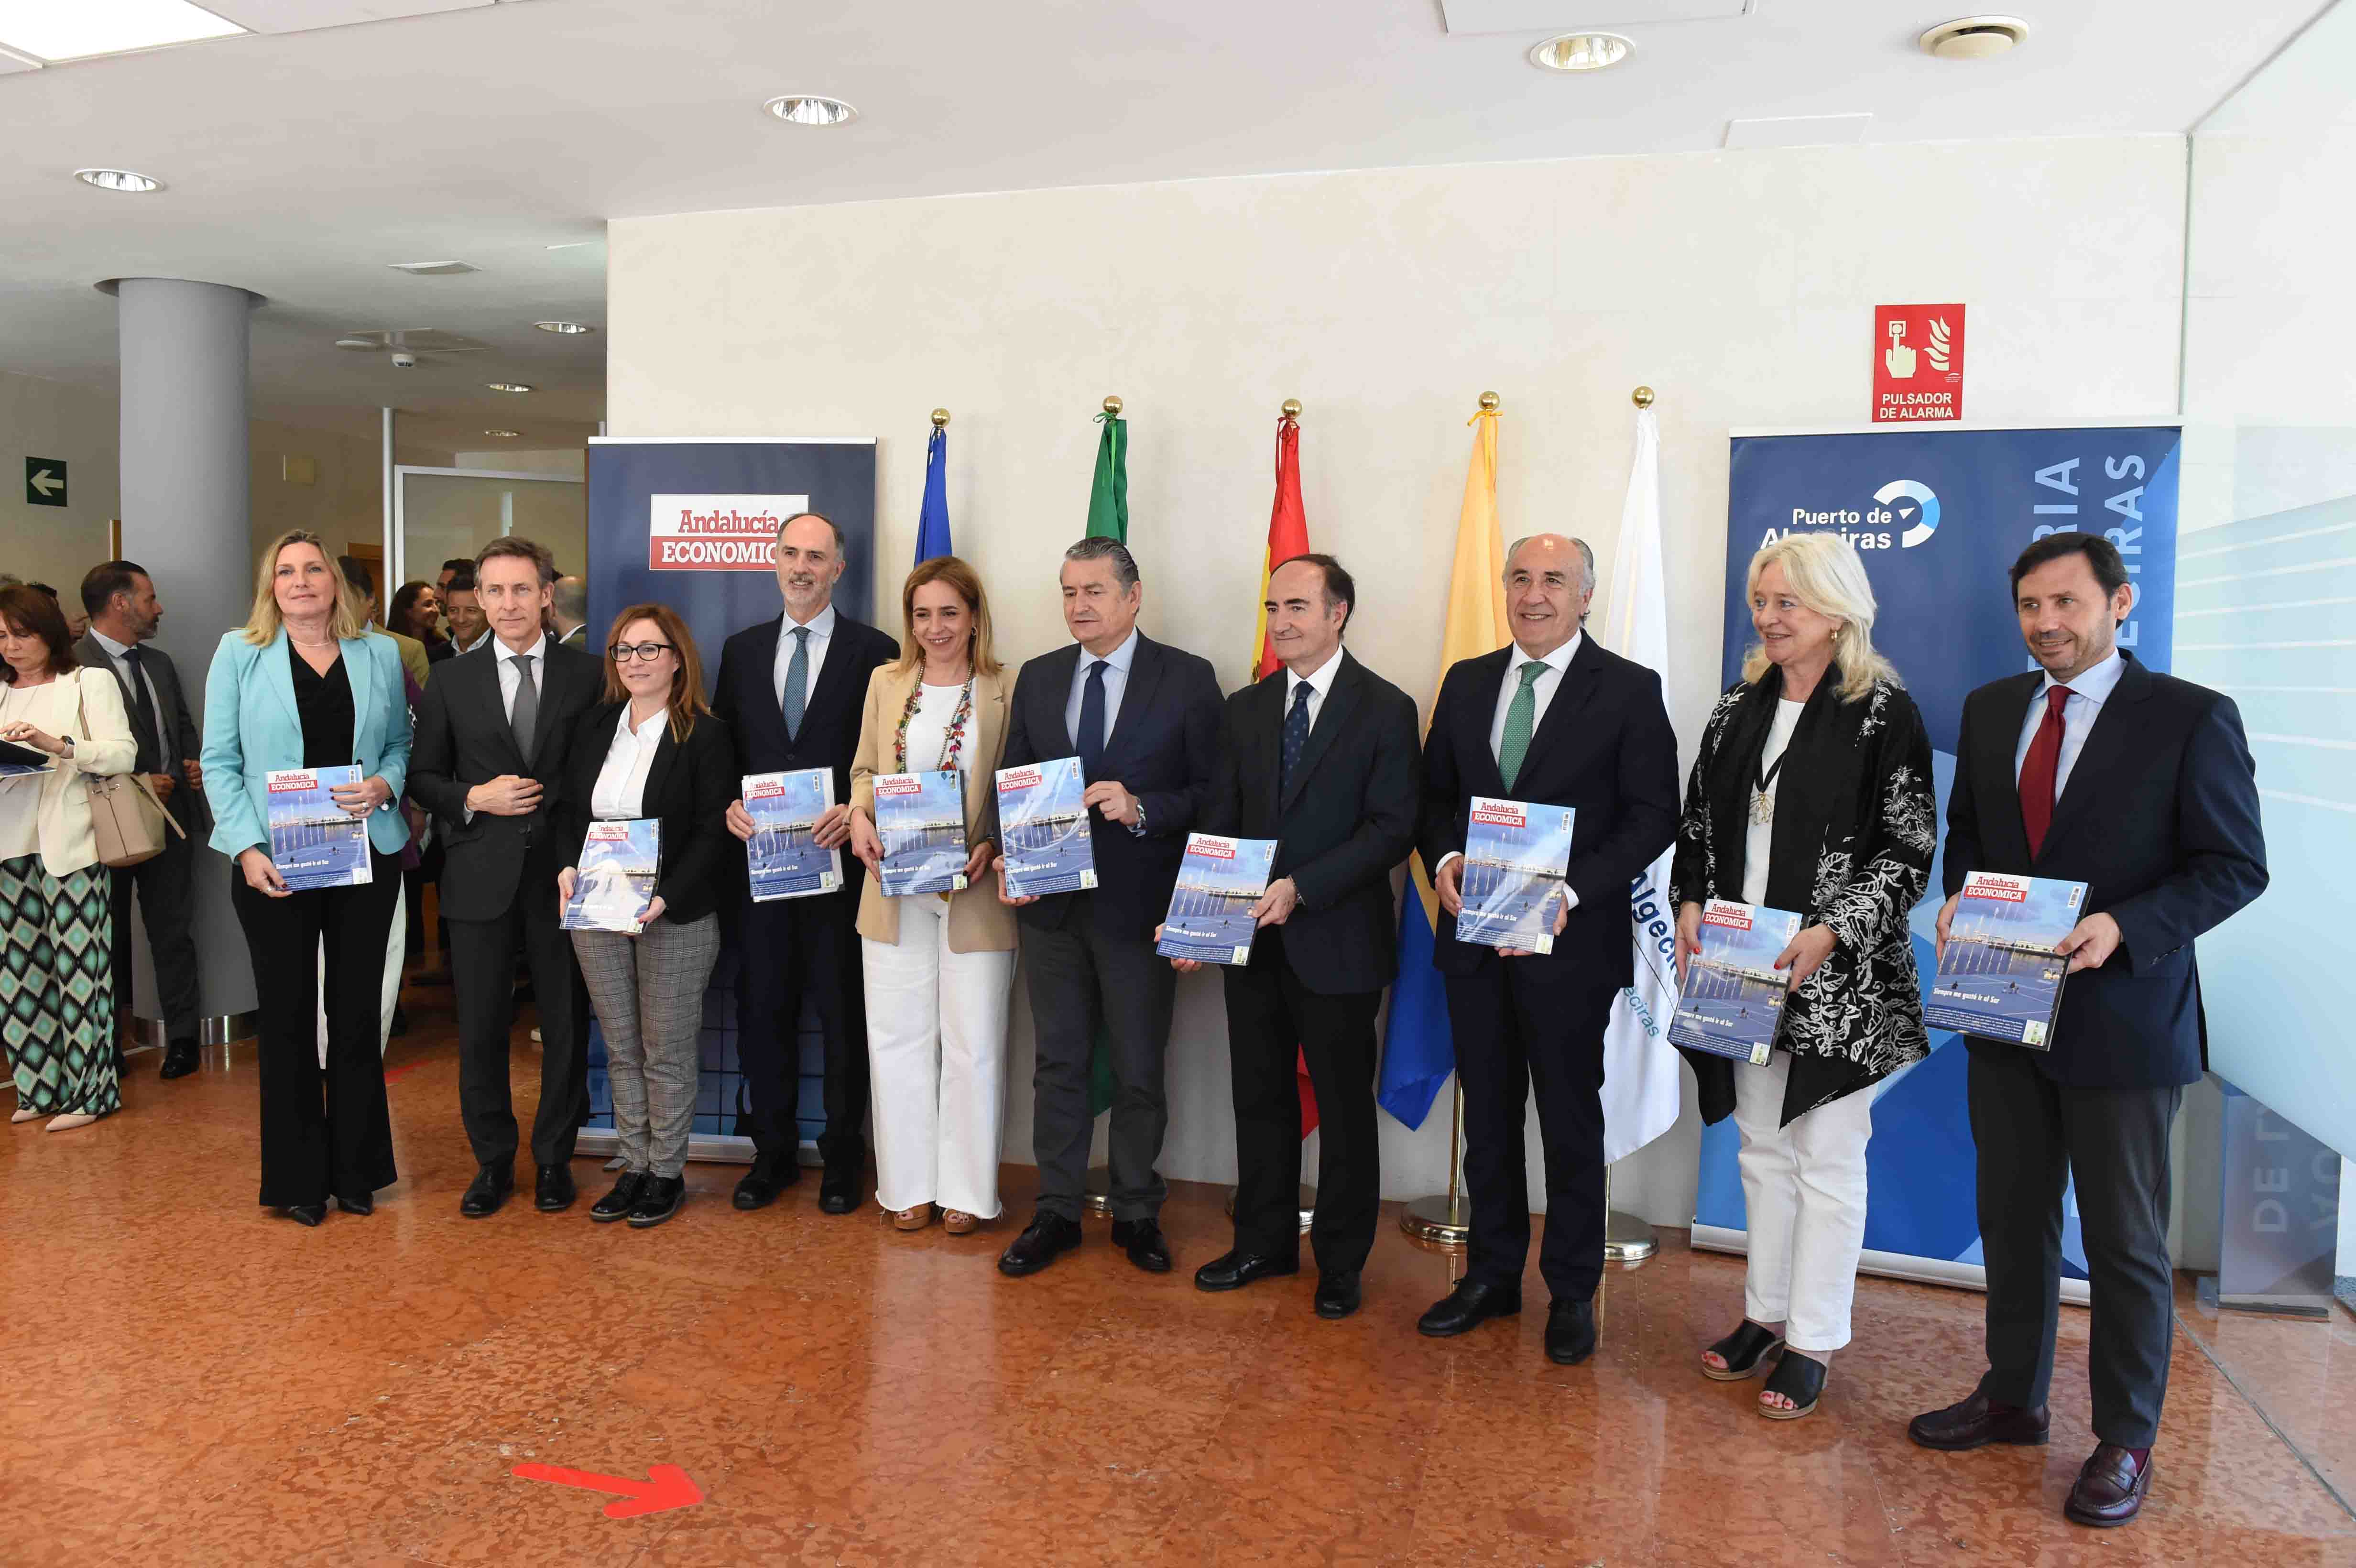 Algeciras y su puerto, protagonistas del nuevo monográfico de la revista 'Andalucía Económica'. 